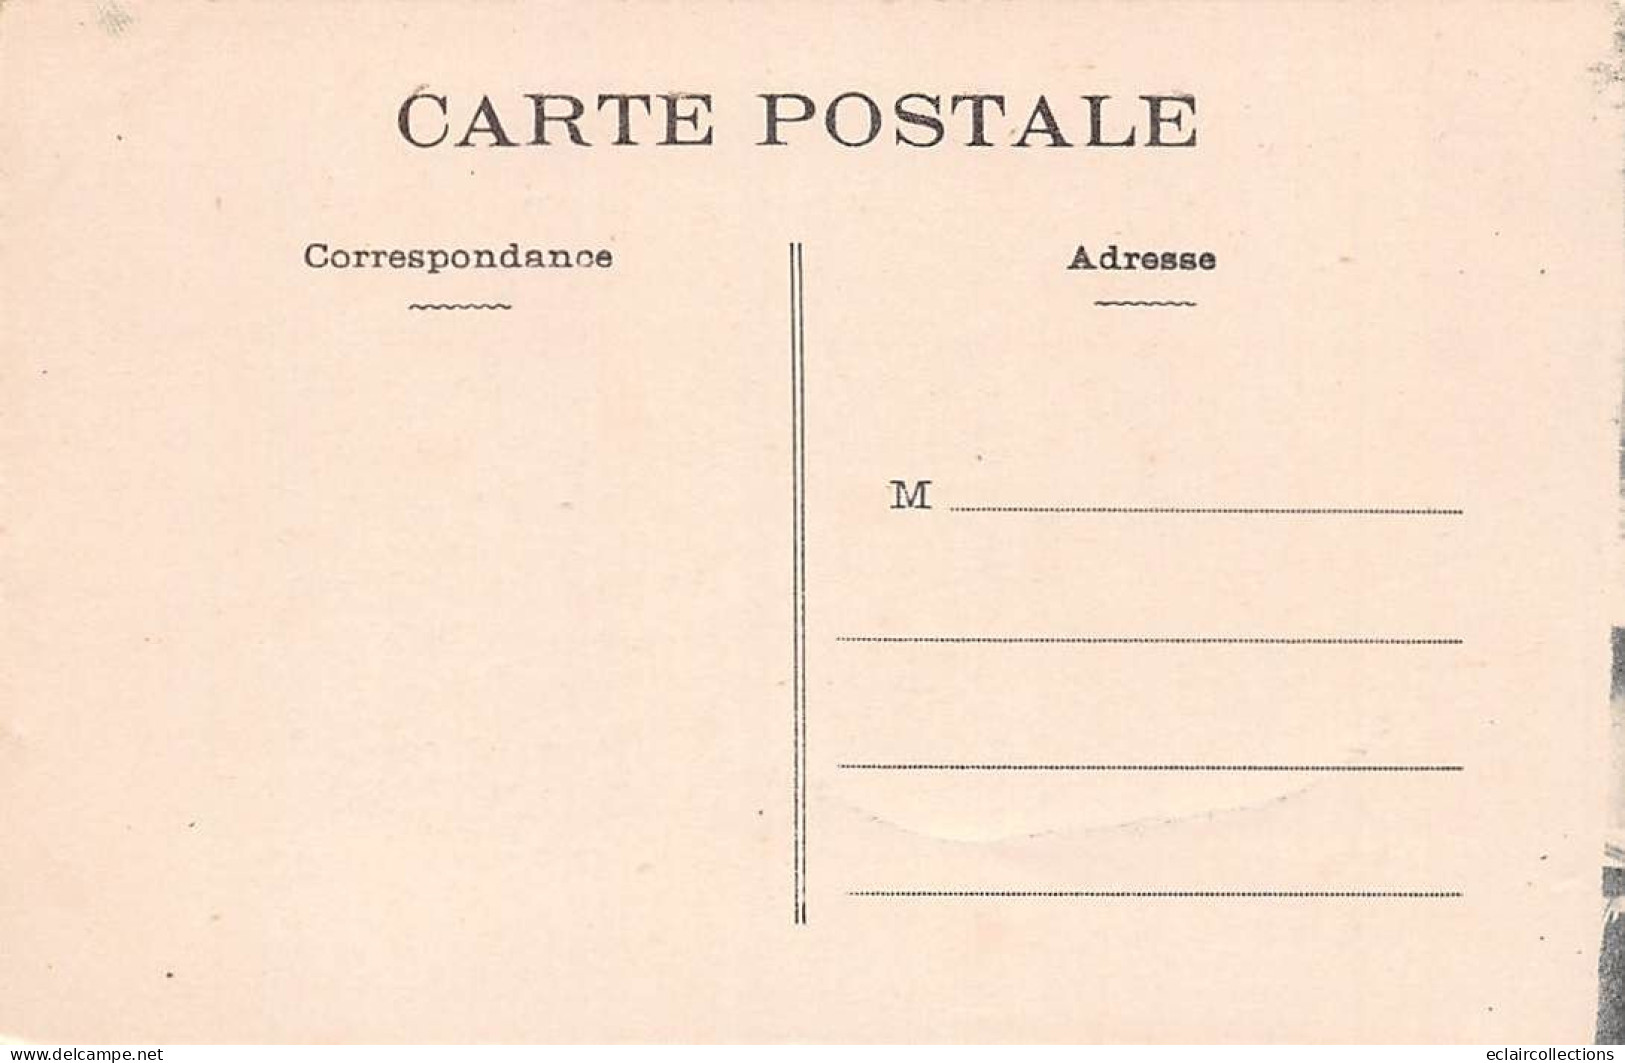 Chalonnes Sur Loire           49       Concours Gymnastique  1911. L'Avenir D'Ingrandes   .Le Défilé       (voir Scan) - Chalonnes Sur Loire